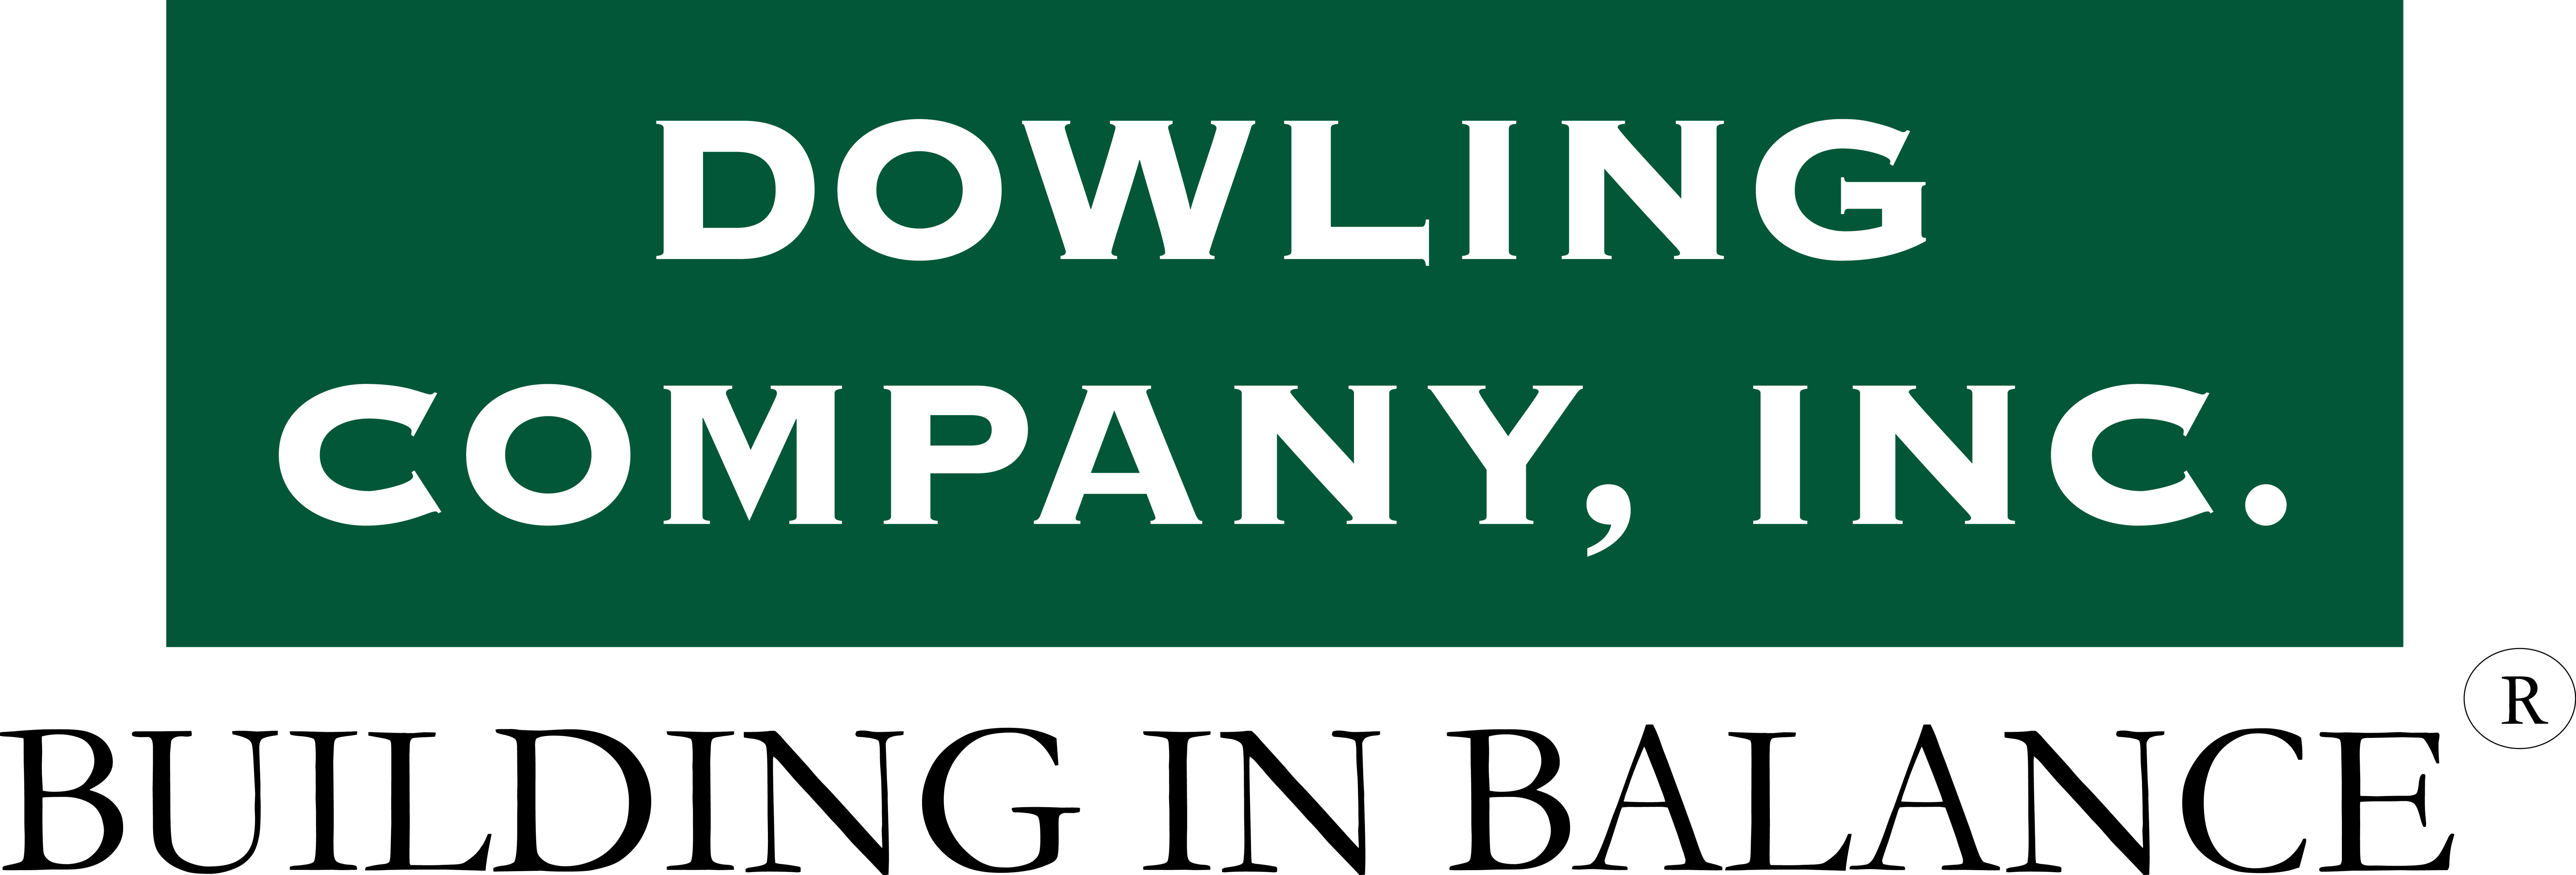 2. Compañía Dowling (Nivel 2)